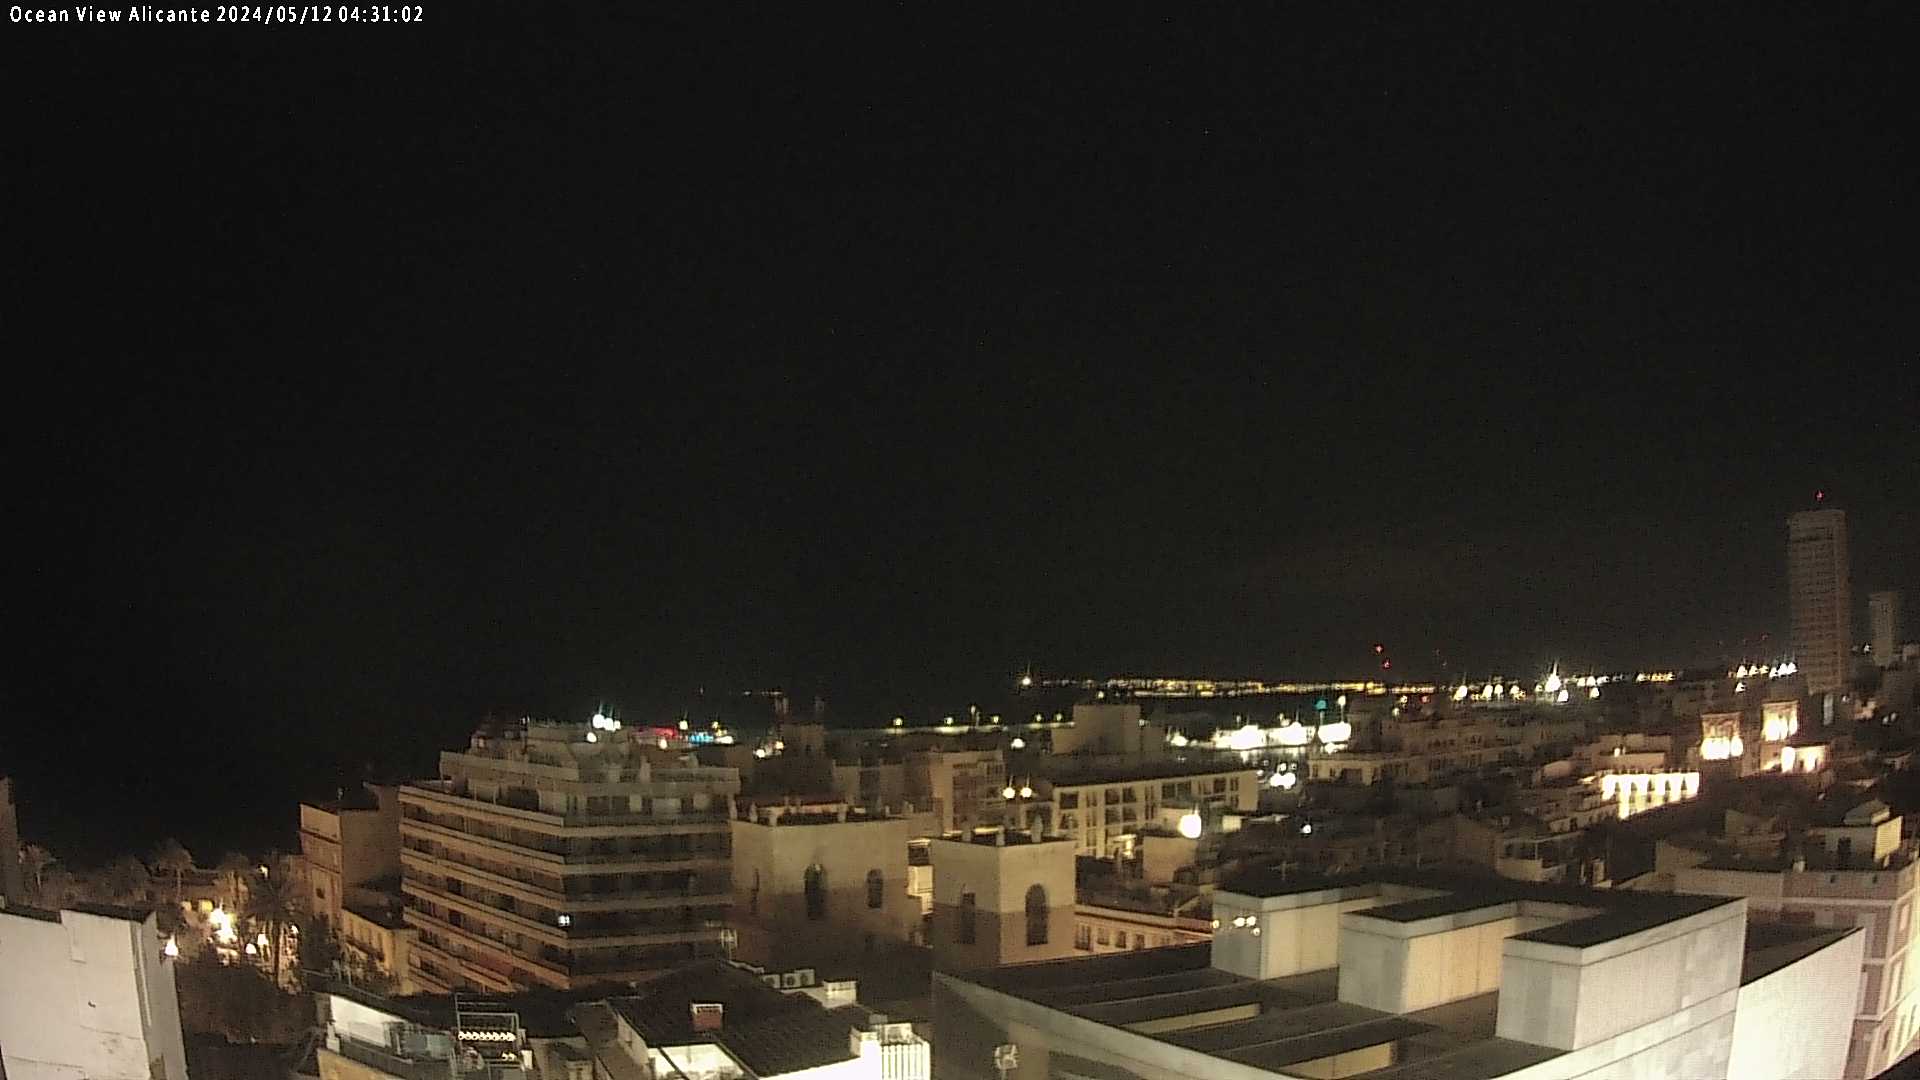 Alicante Je. 04:31